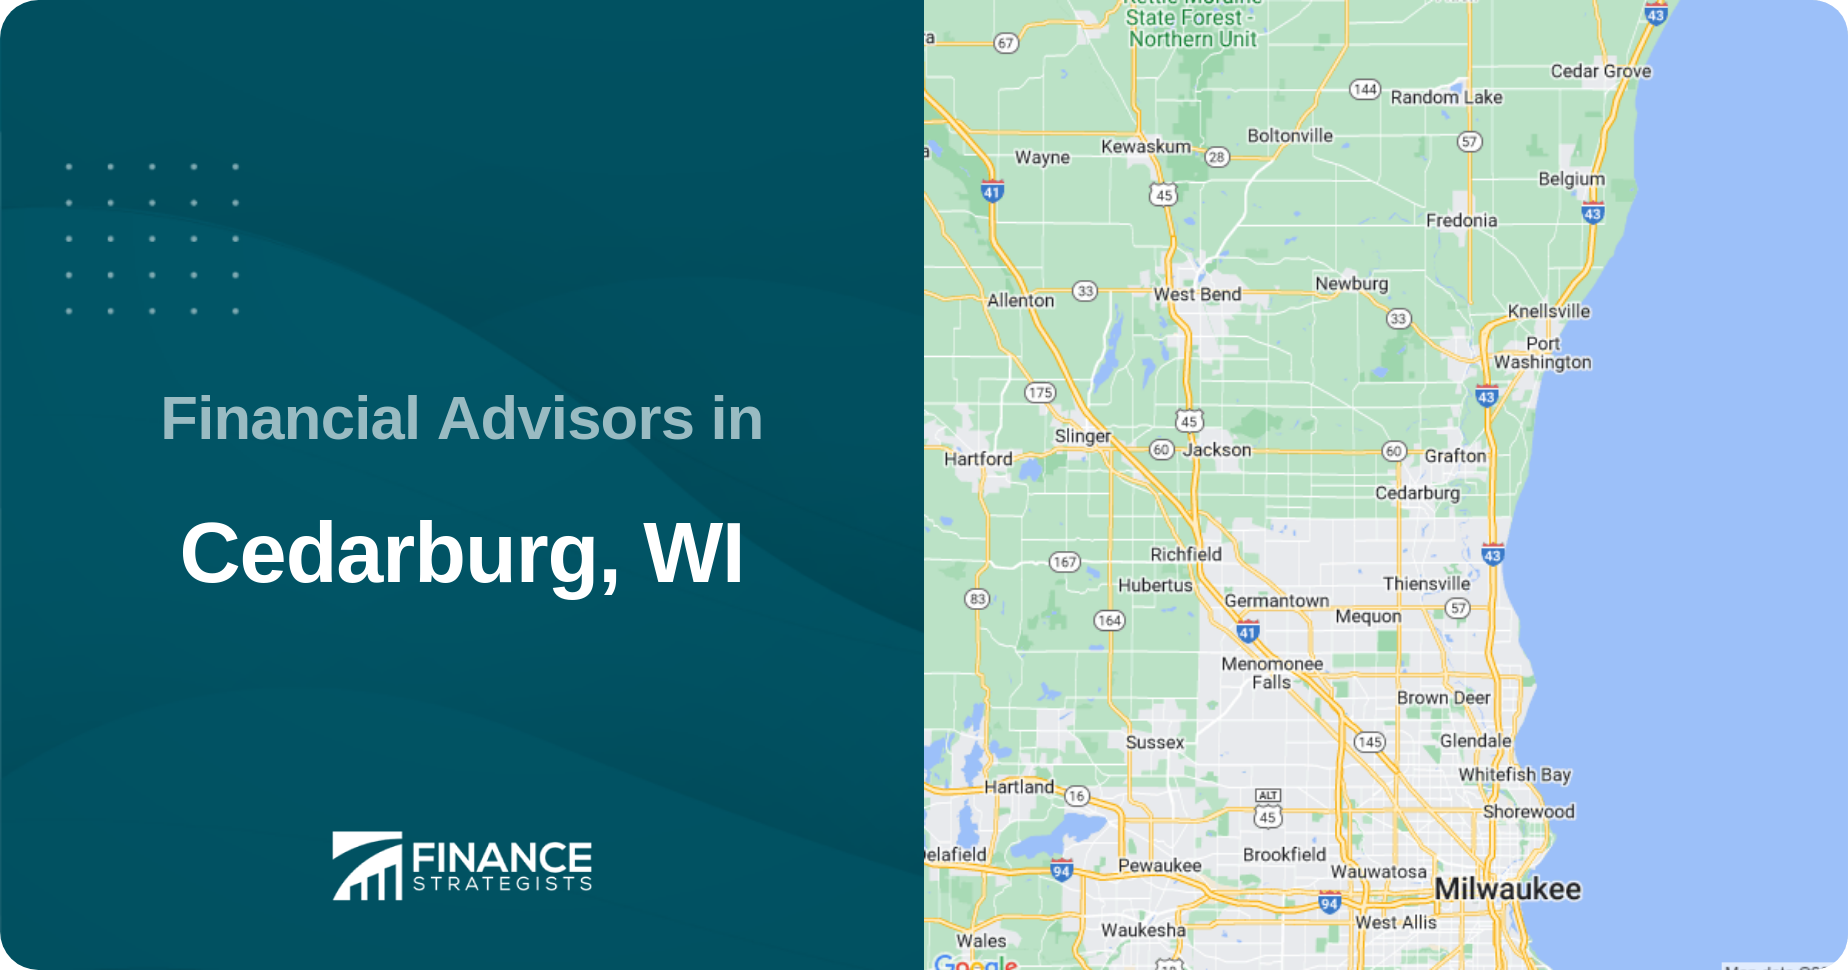 Financial Advisors in Cedarburg, WI